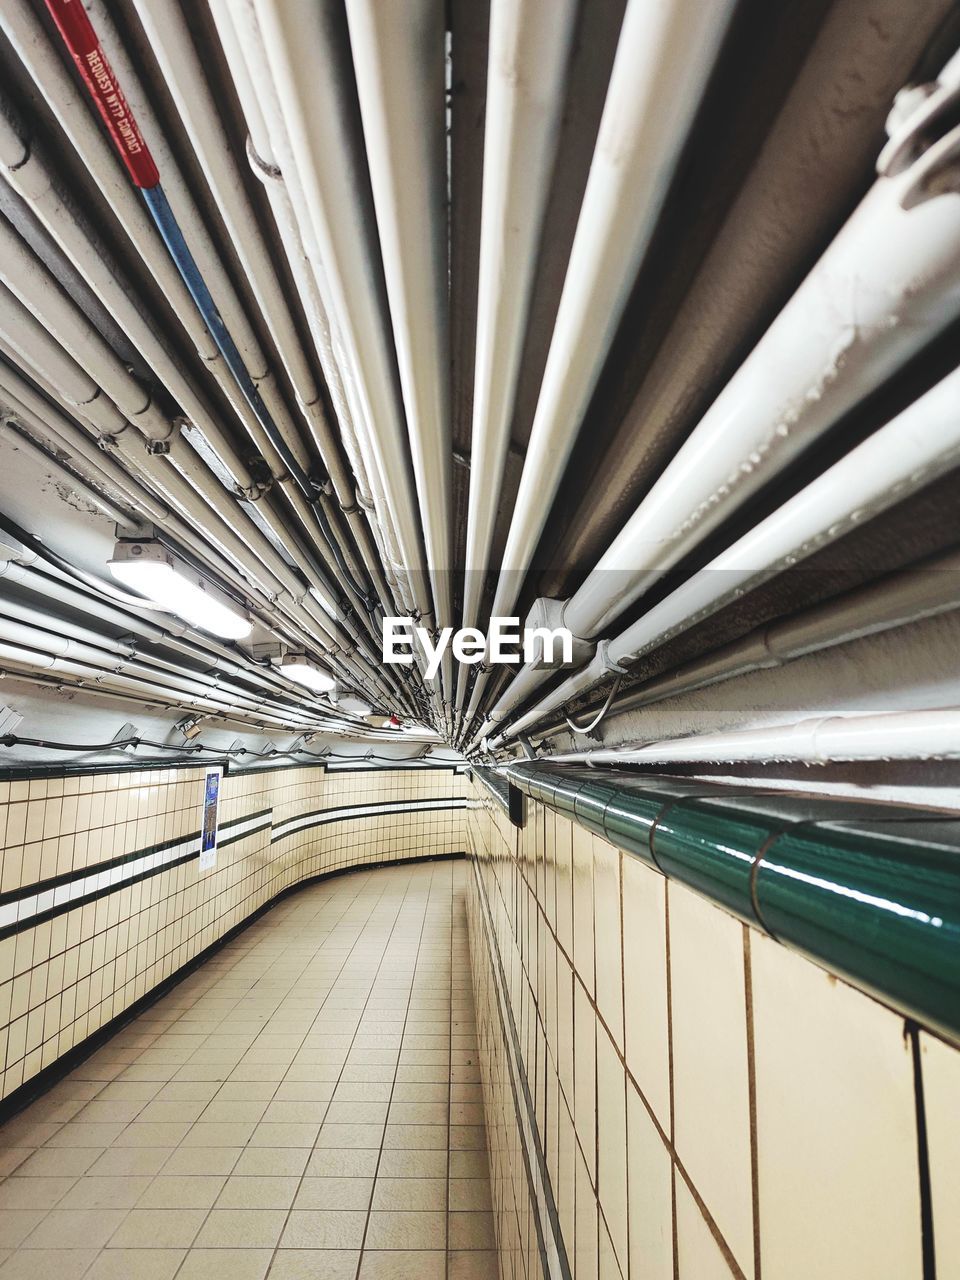 Full frame shot of pipes at subway station